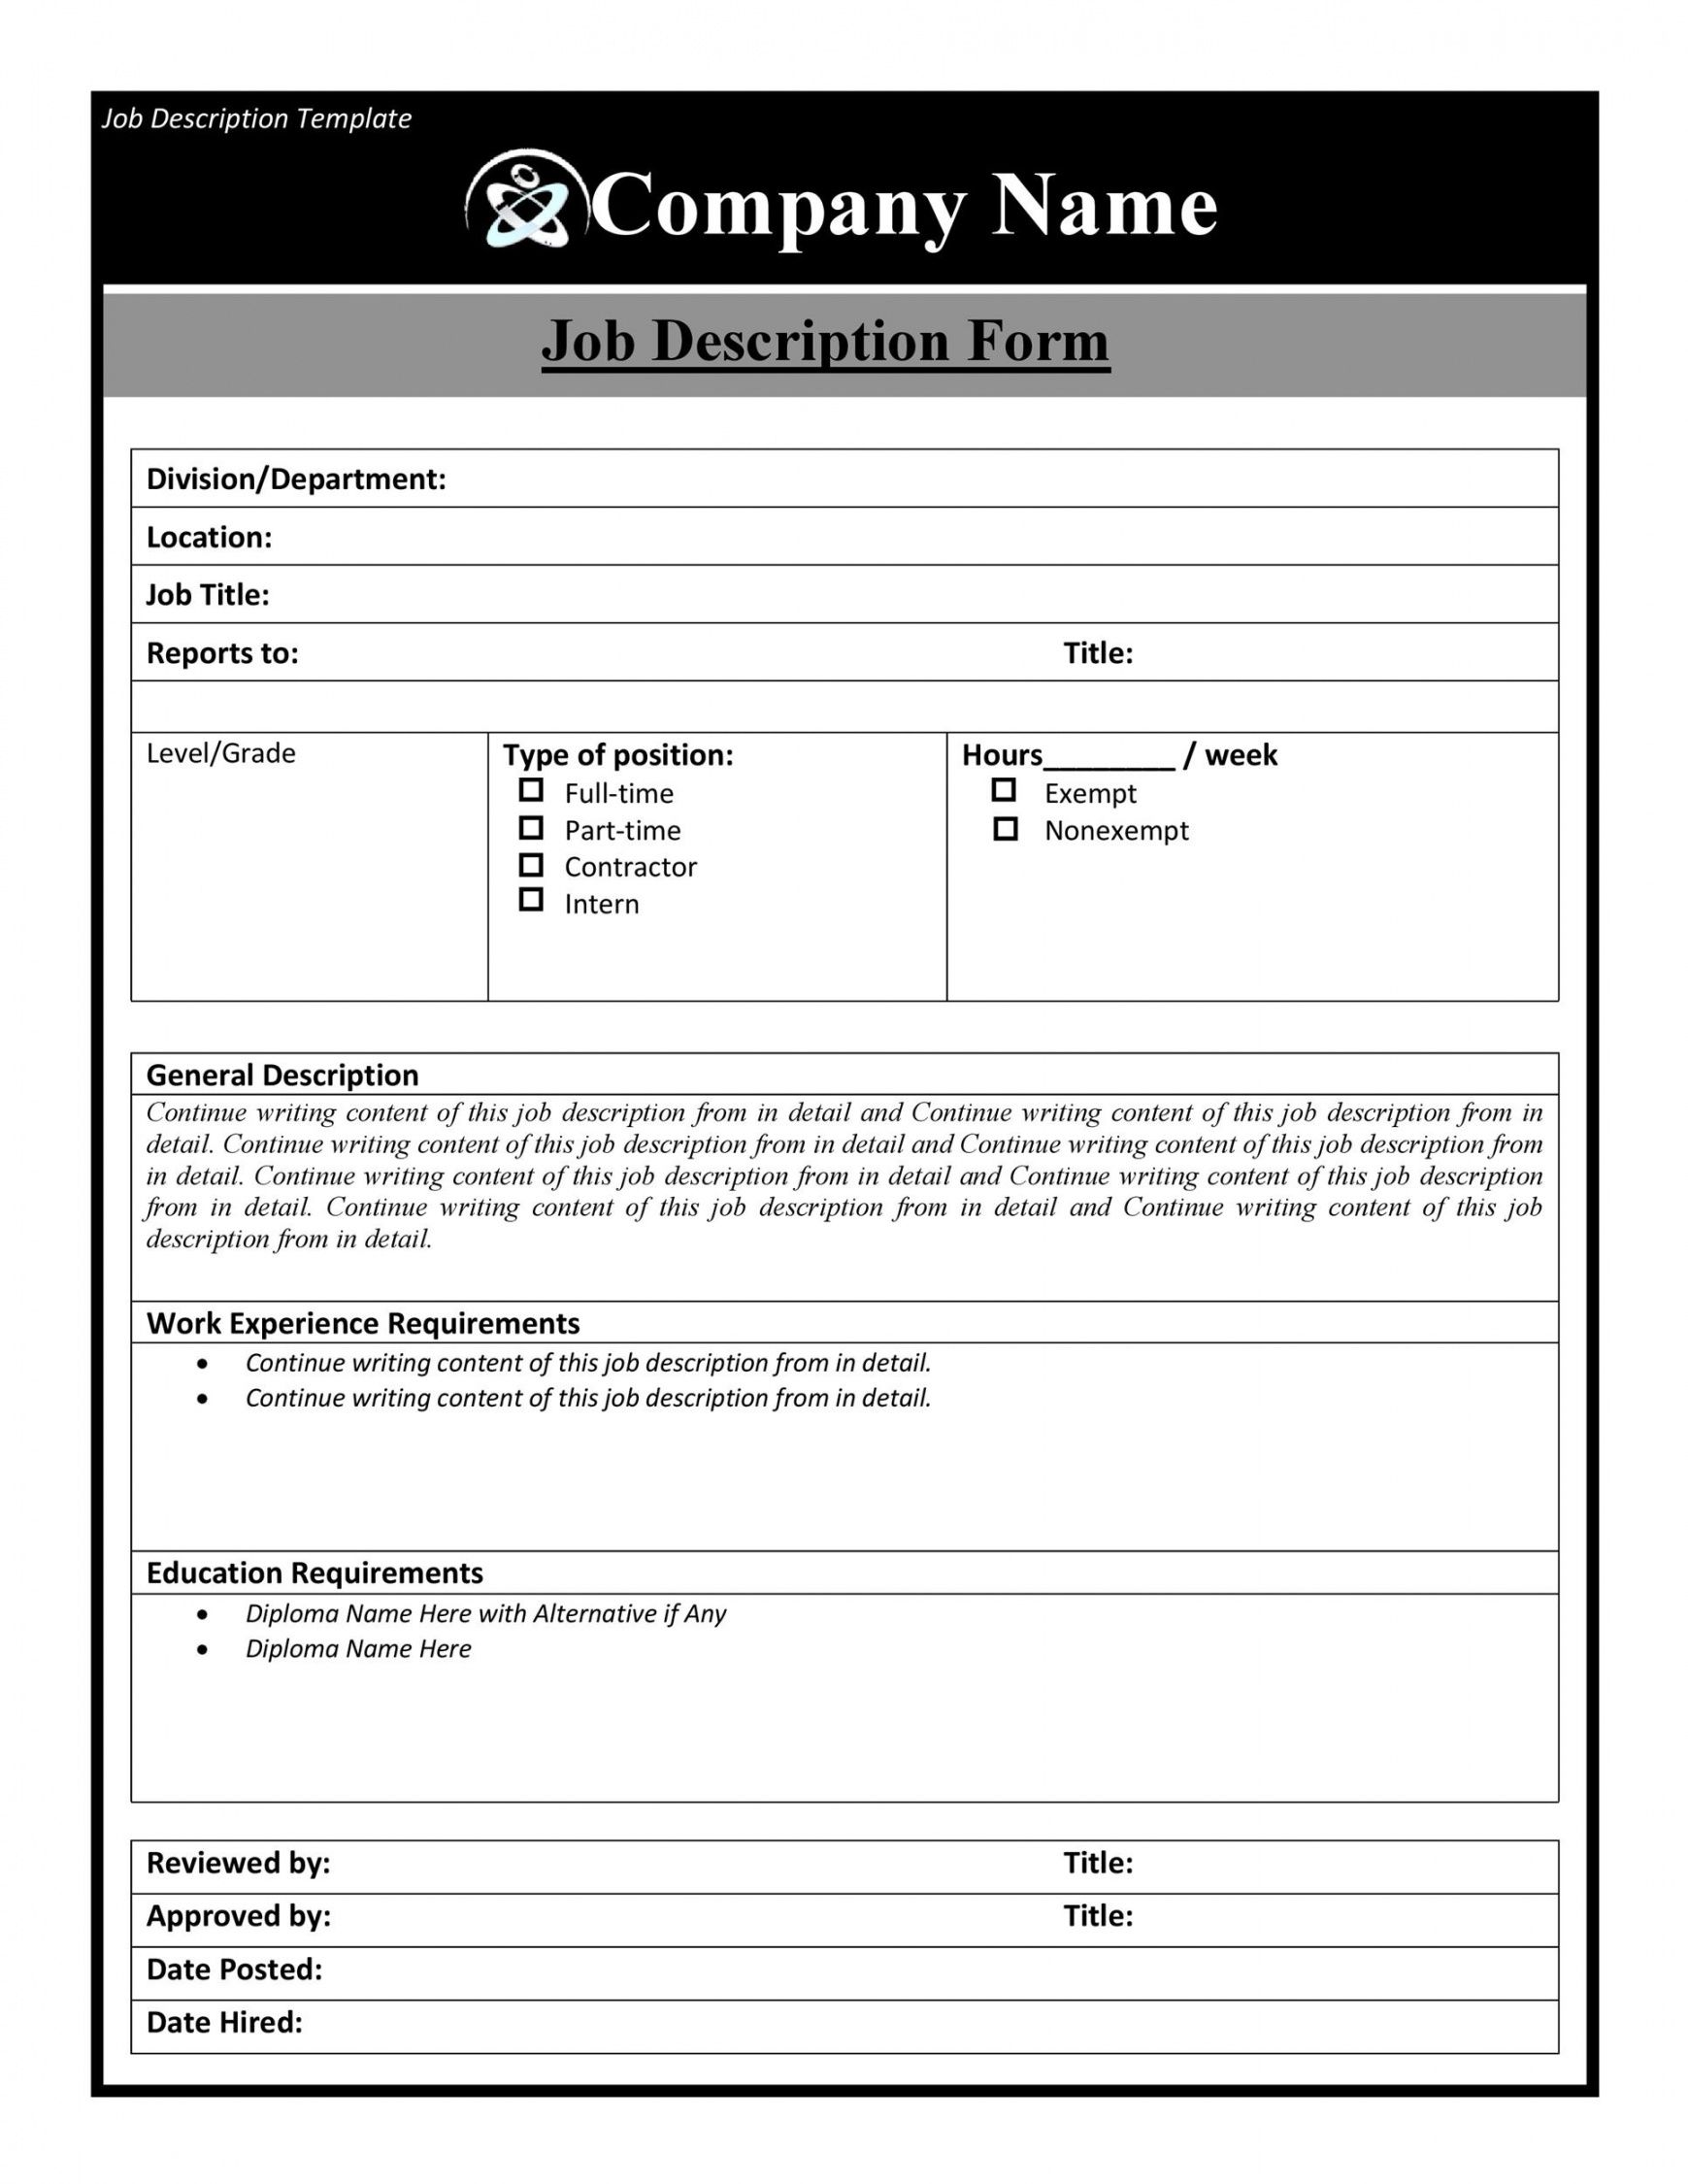 47 job description templates &amp; examples ᐅ templatelab it job description template doc